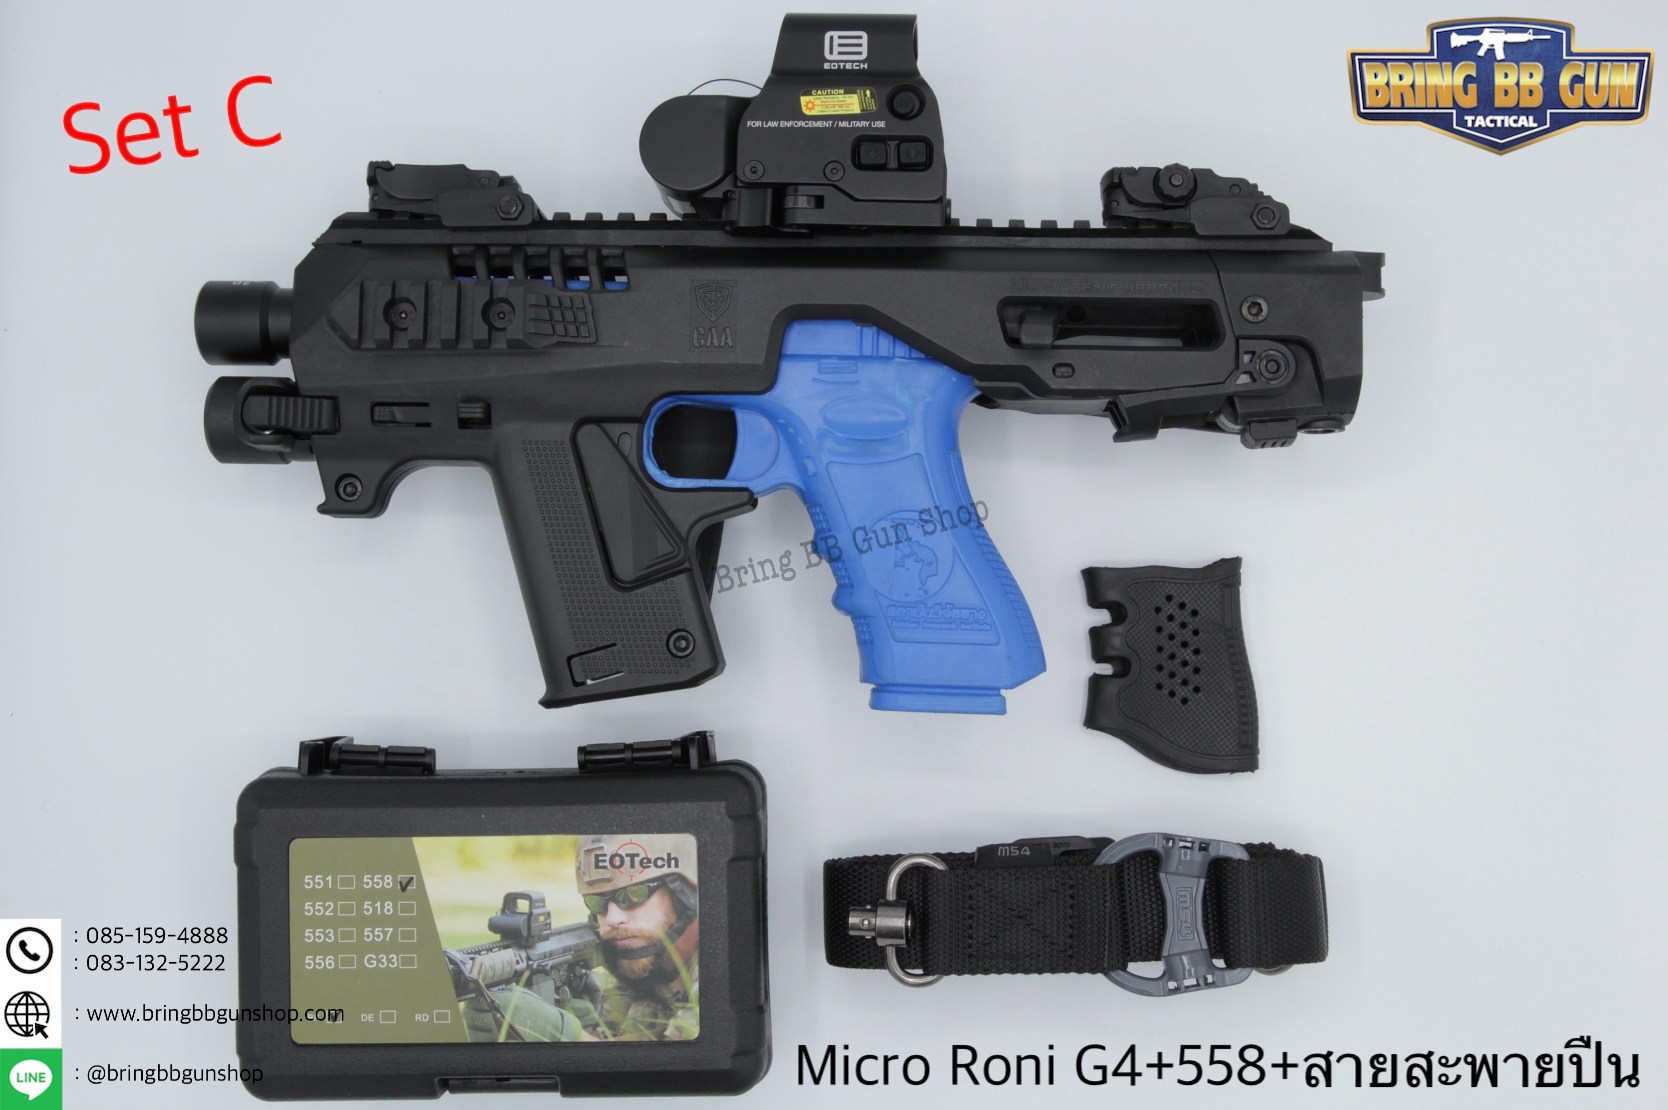 ชุดสุดคุ้ม Micro Roni Gen 4+ เรทดอท + สายสะพายปืน ชุดประกอบปืนสั้น Micro Roni Gen4(Glock)  สำหรับปืนGlock17/18/19/22/31